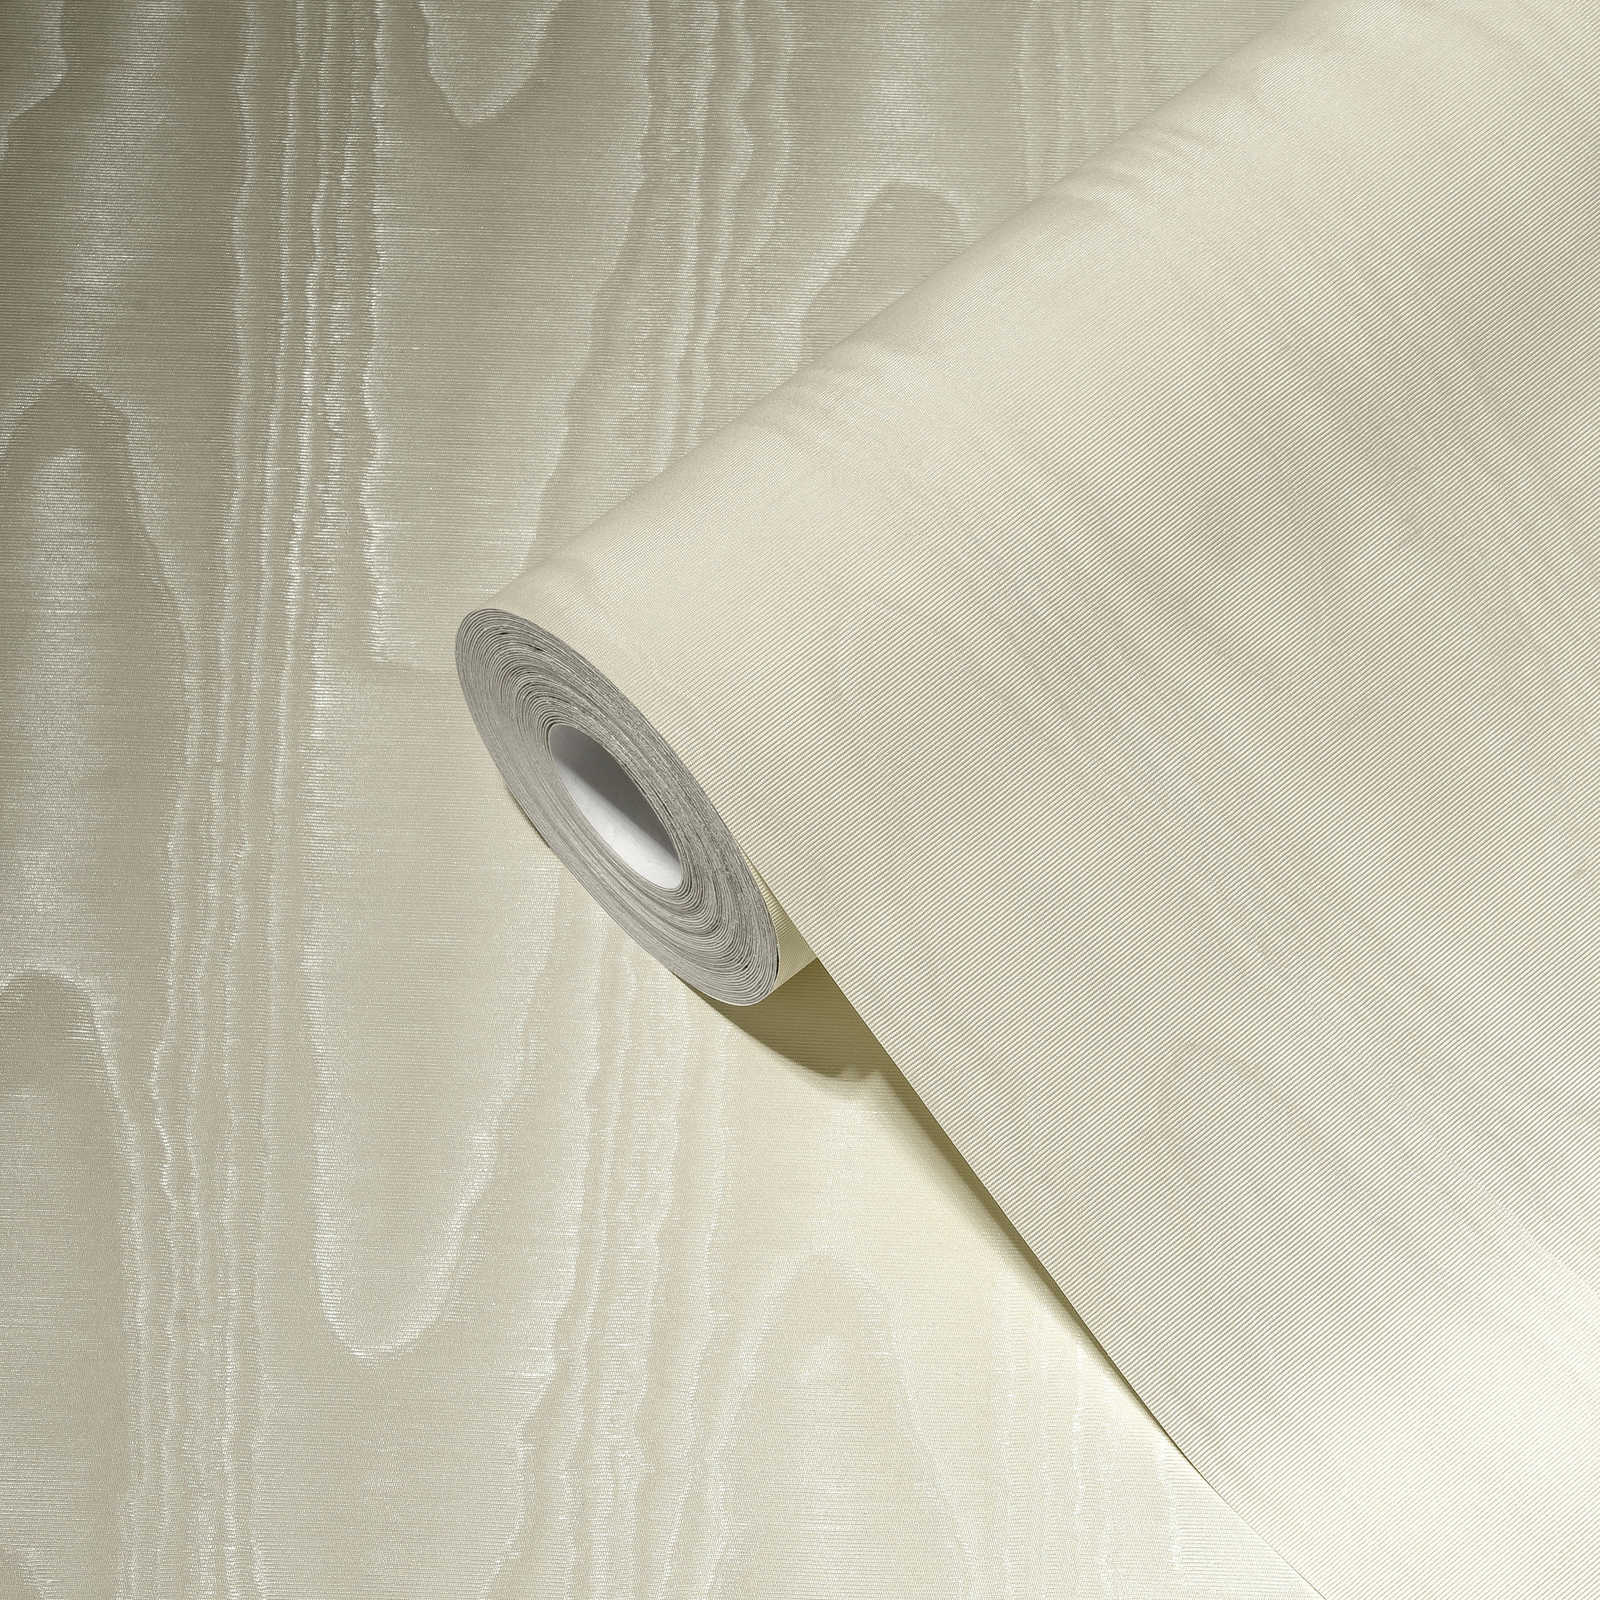             Textiel-look behangpapier crème met zijde moiré effect
        